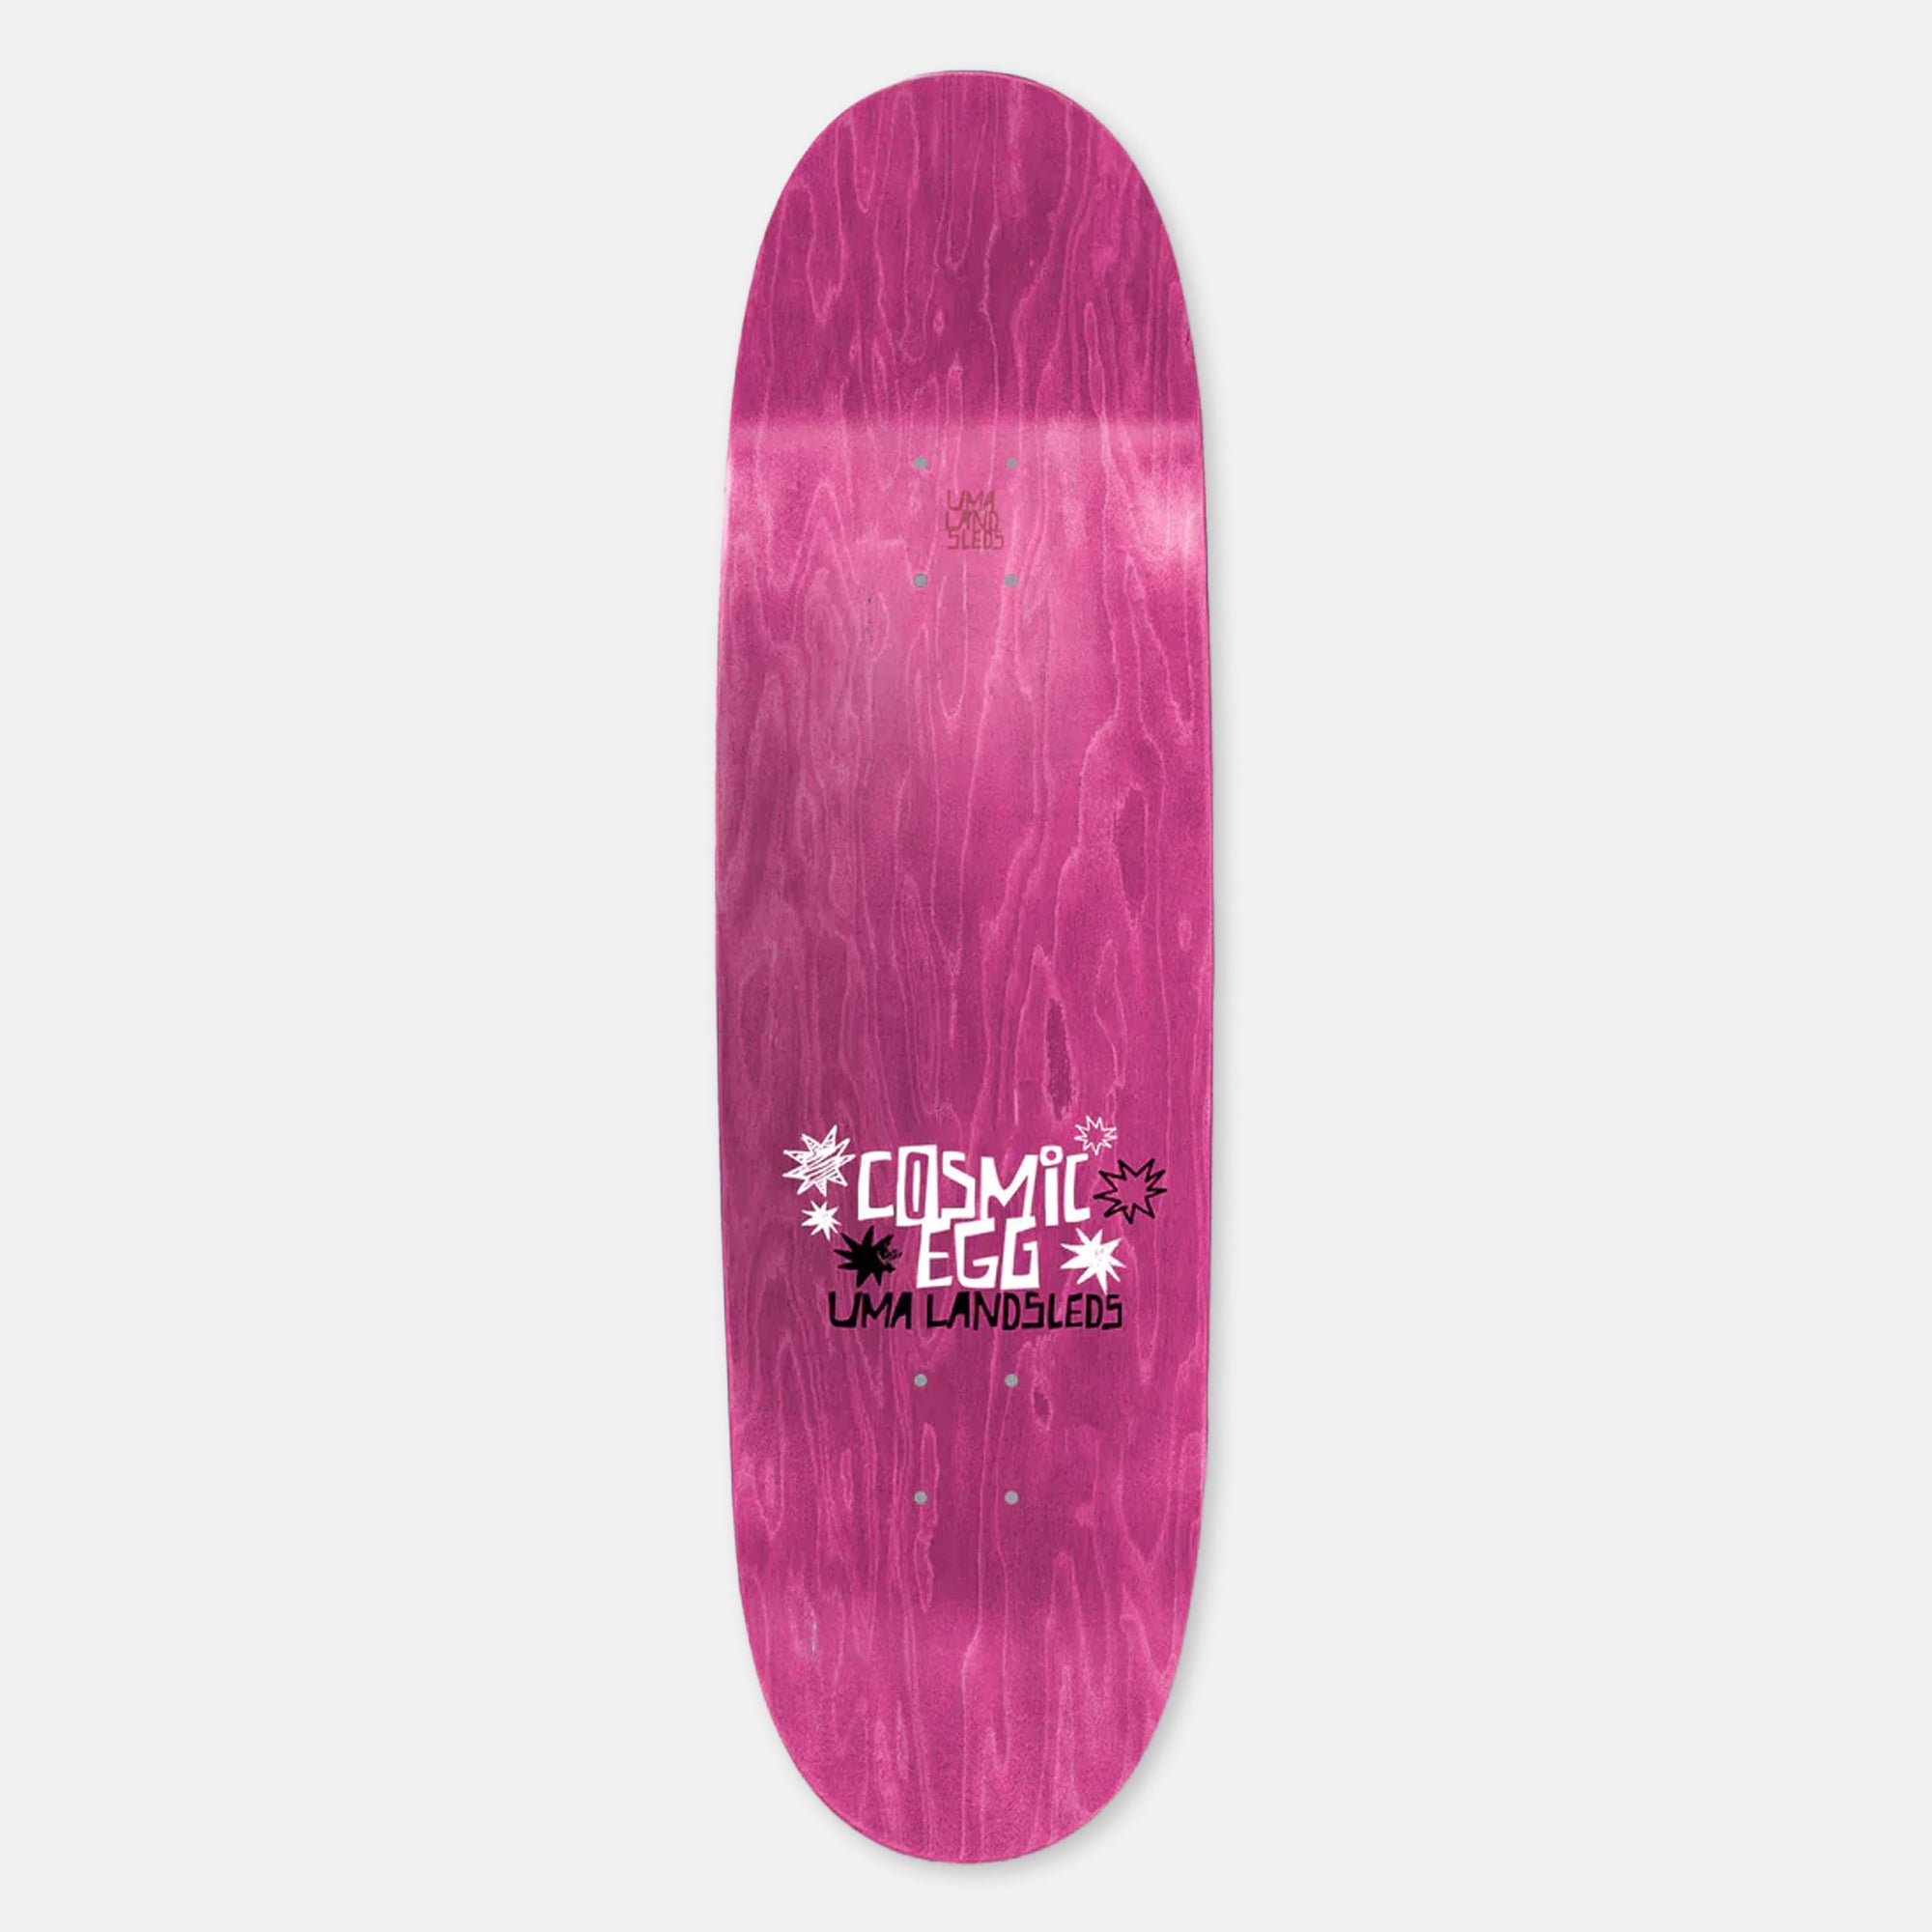 Uma Landsleds - 9.0" Cosmic Egg Skateboard Deck - Holographic Foil